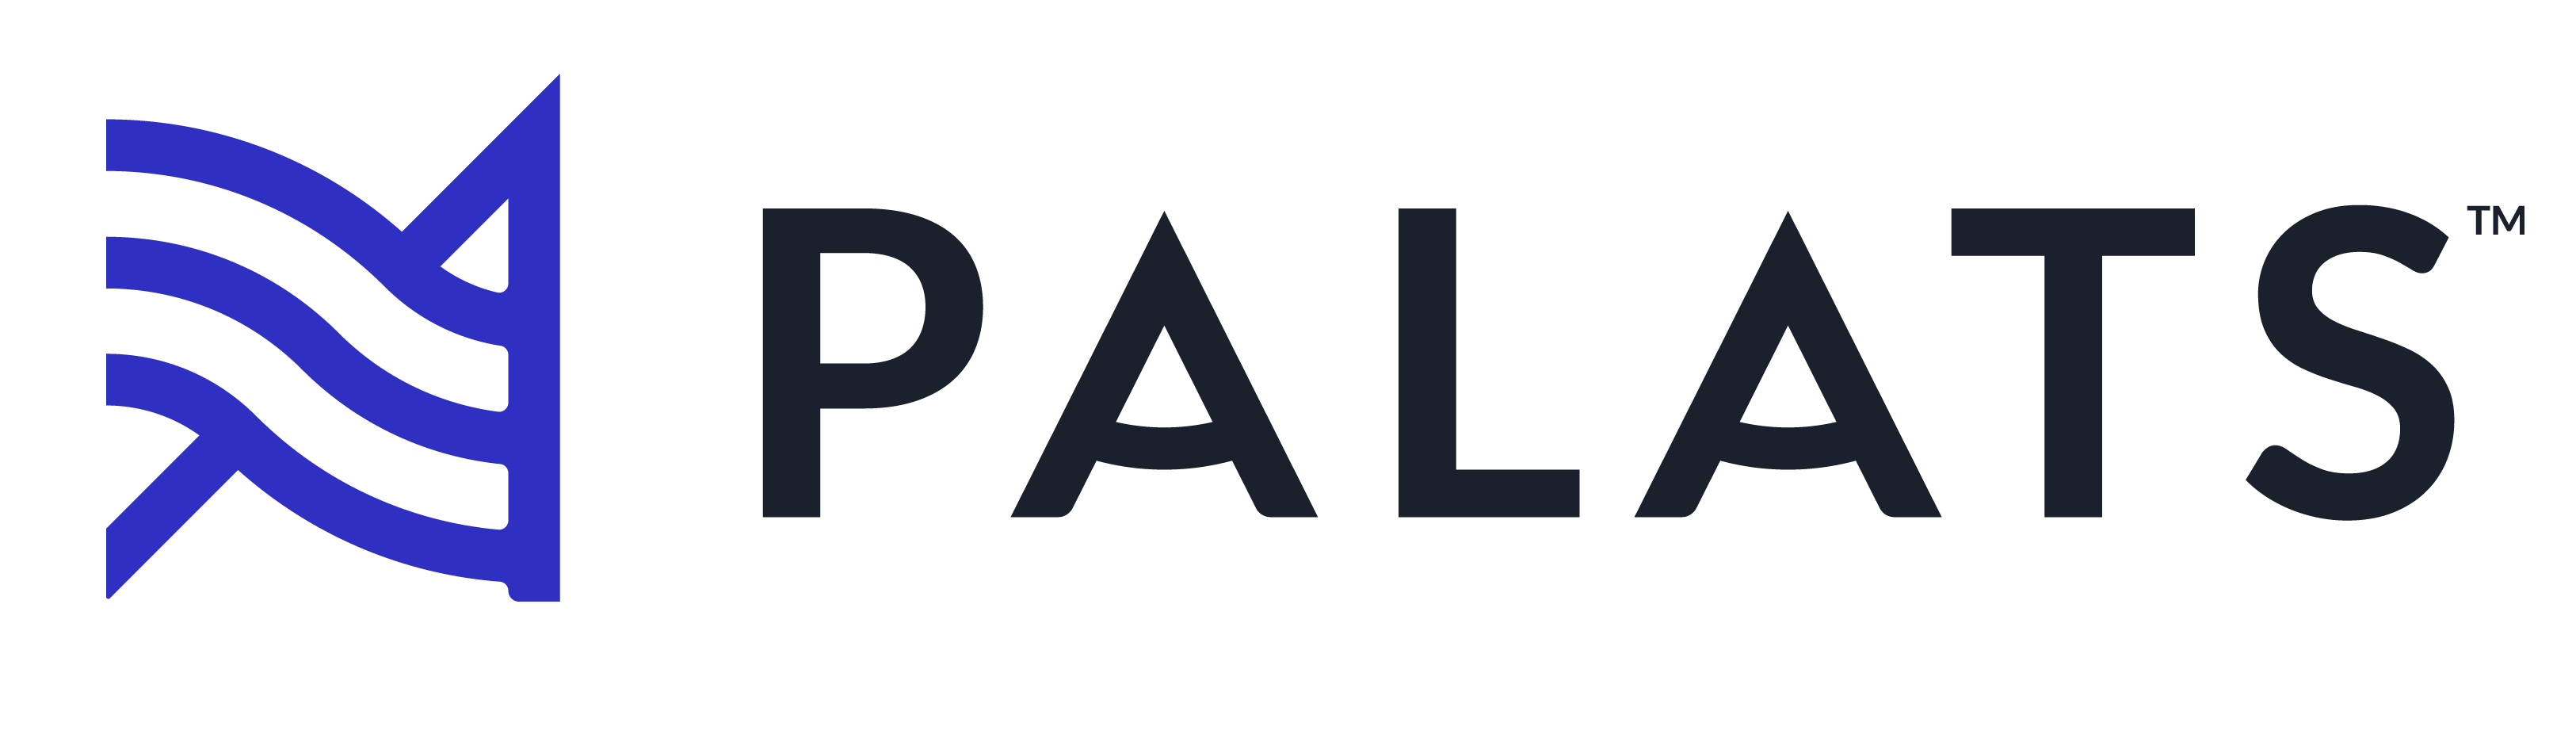 Palats Combined mark ) (1)